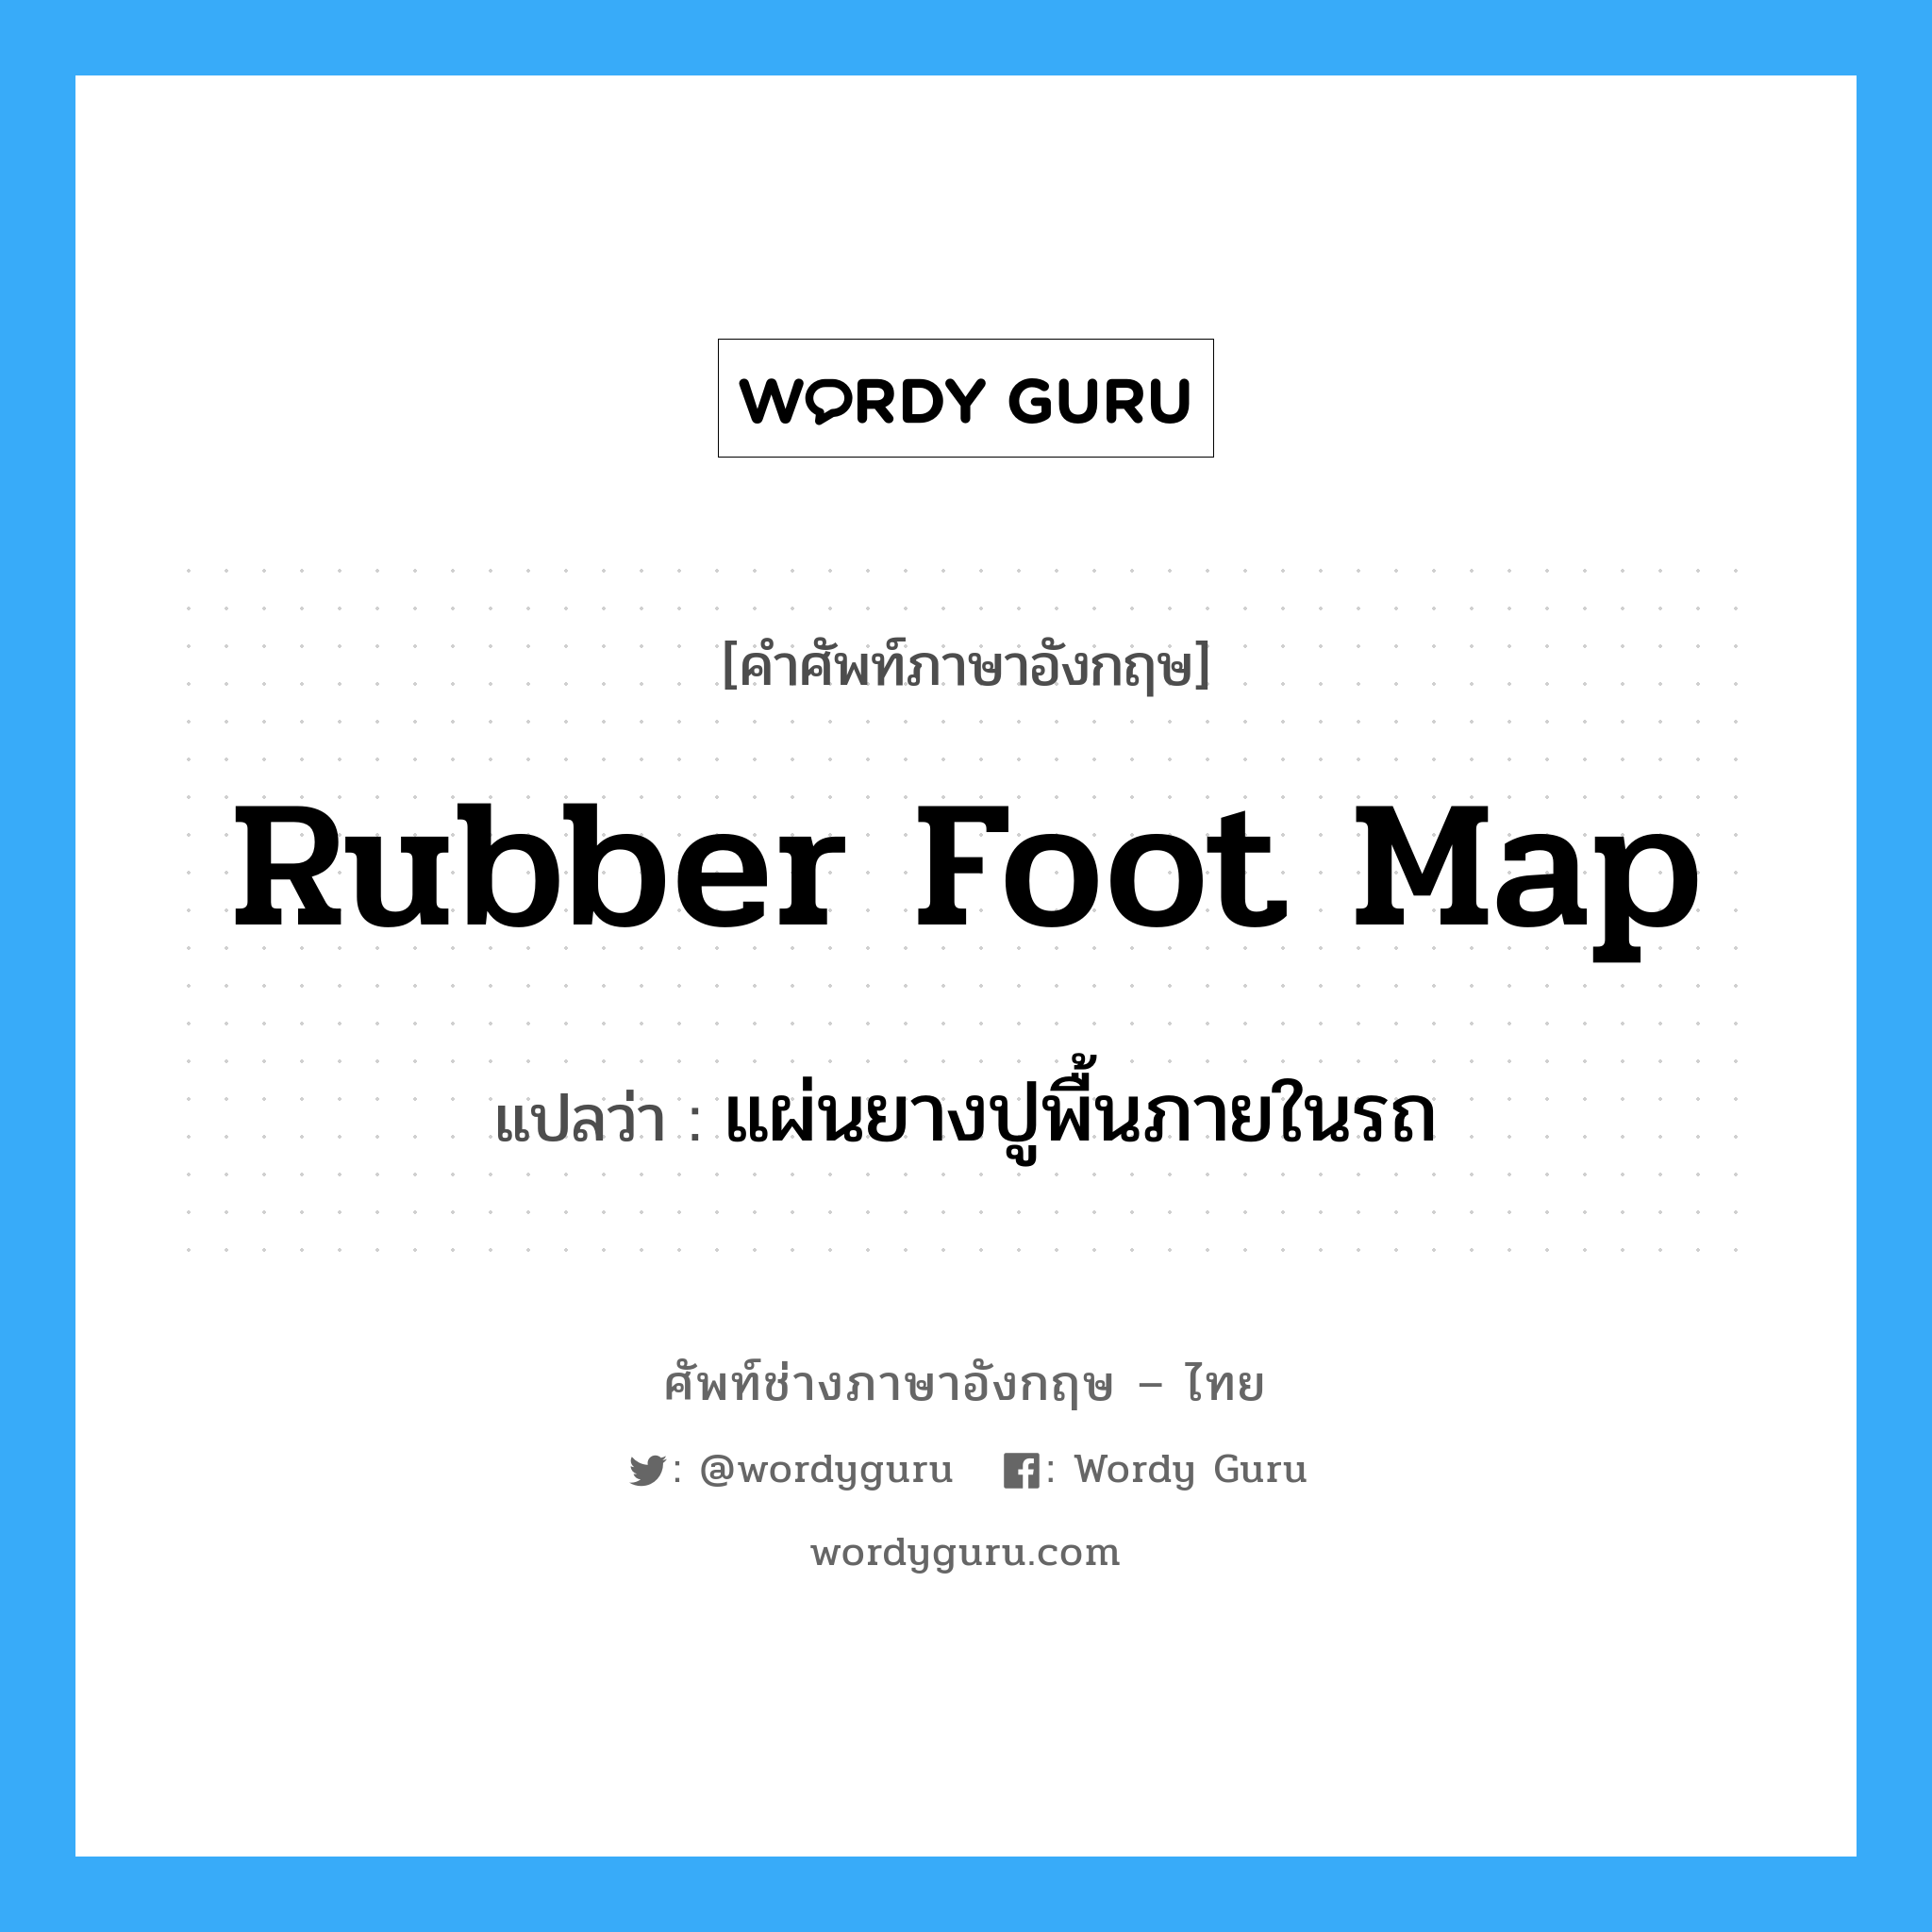 rubber foot map แปลว่า?, คำศัพท์ช่างภาษาอังกฤษ - ไทย rubber foot map คำศัพท์ภาษาอังกฤษ rubber foot map แปลว่า แผ่นยางปูพื้นภายในรถ